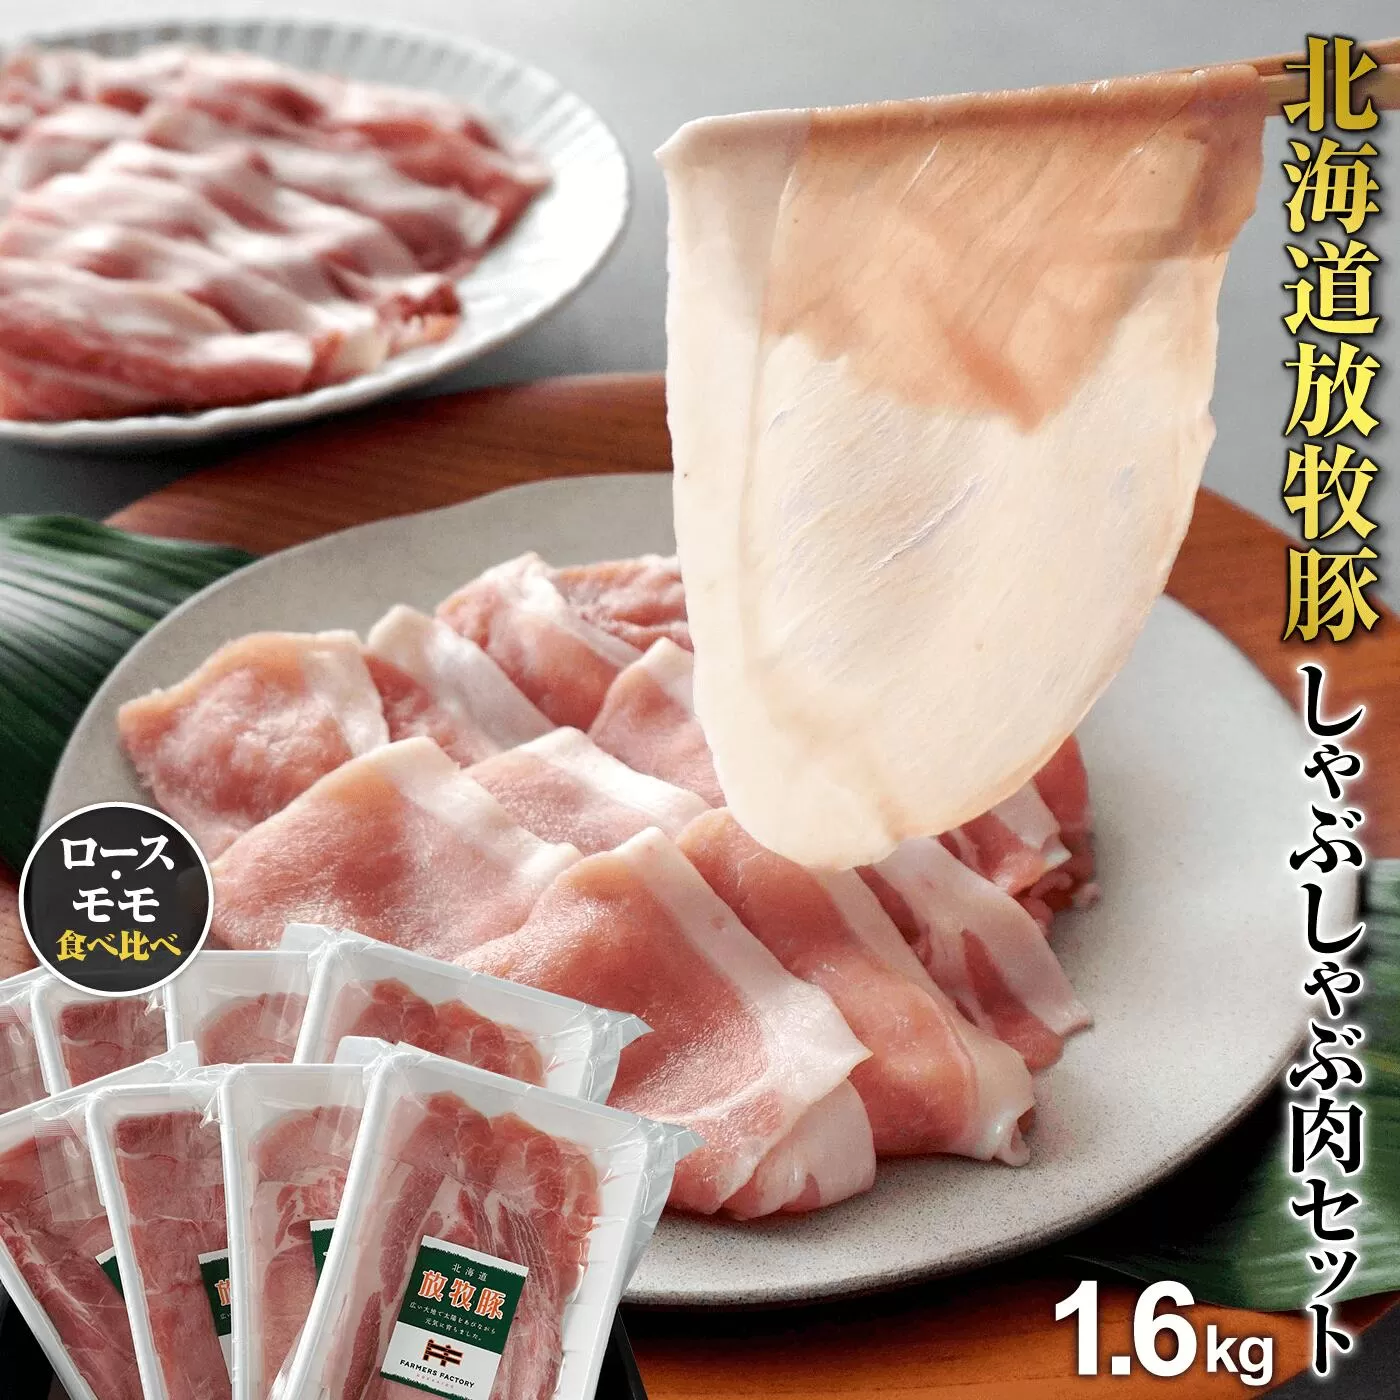 北海道産放牧豚 しゃぶしゃぶ肉（ロース・モモ）セット ×2セット《北海道恵庭市》【120005】